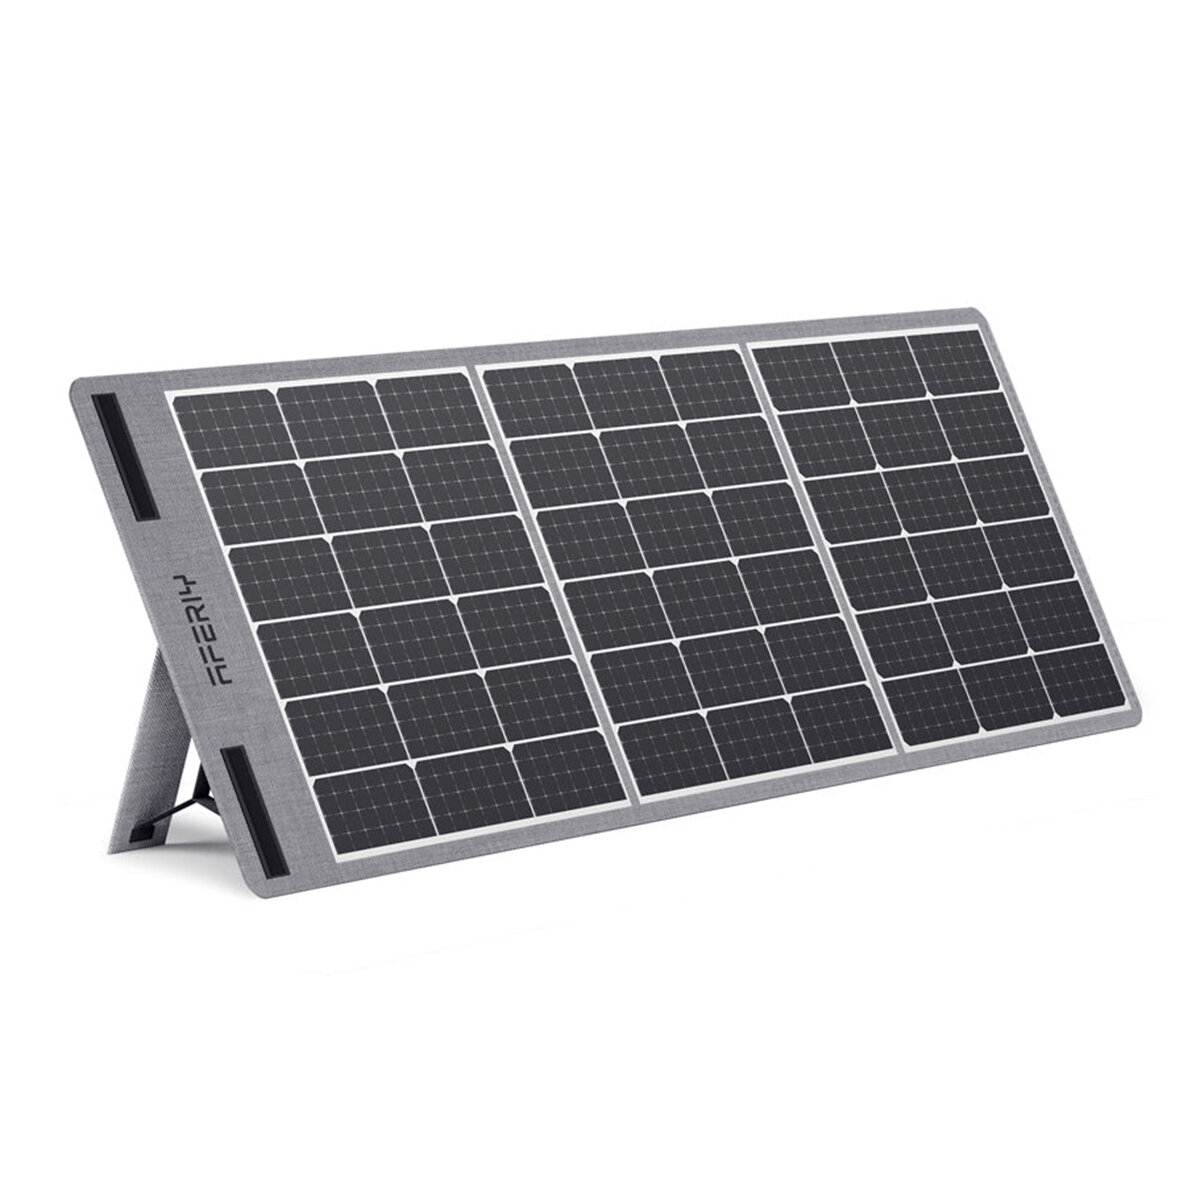 [EU Direct] AFERIY لوحات شمسية قابلة للطي بقوة 100 واط للشحن الشمسي بخلايا منوعة ومخرجات USB DC وحماية IP65 للماء للتخييم في الهواء الطلق للطوارئ